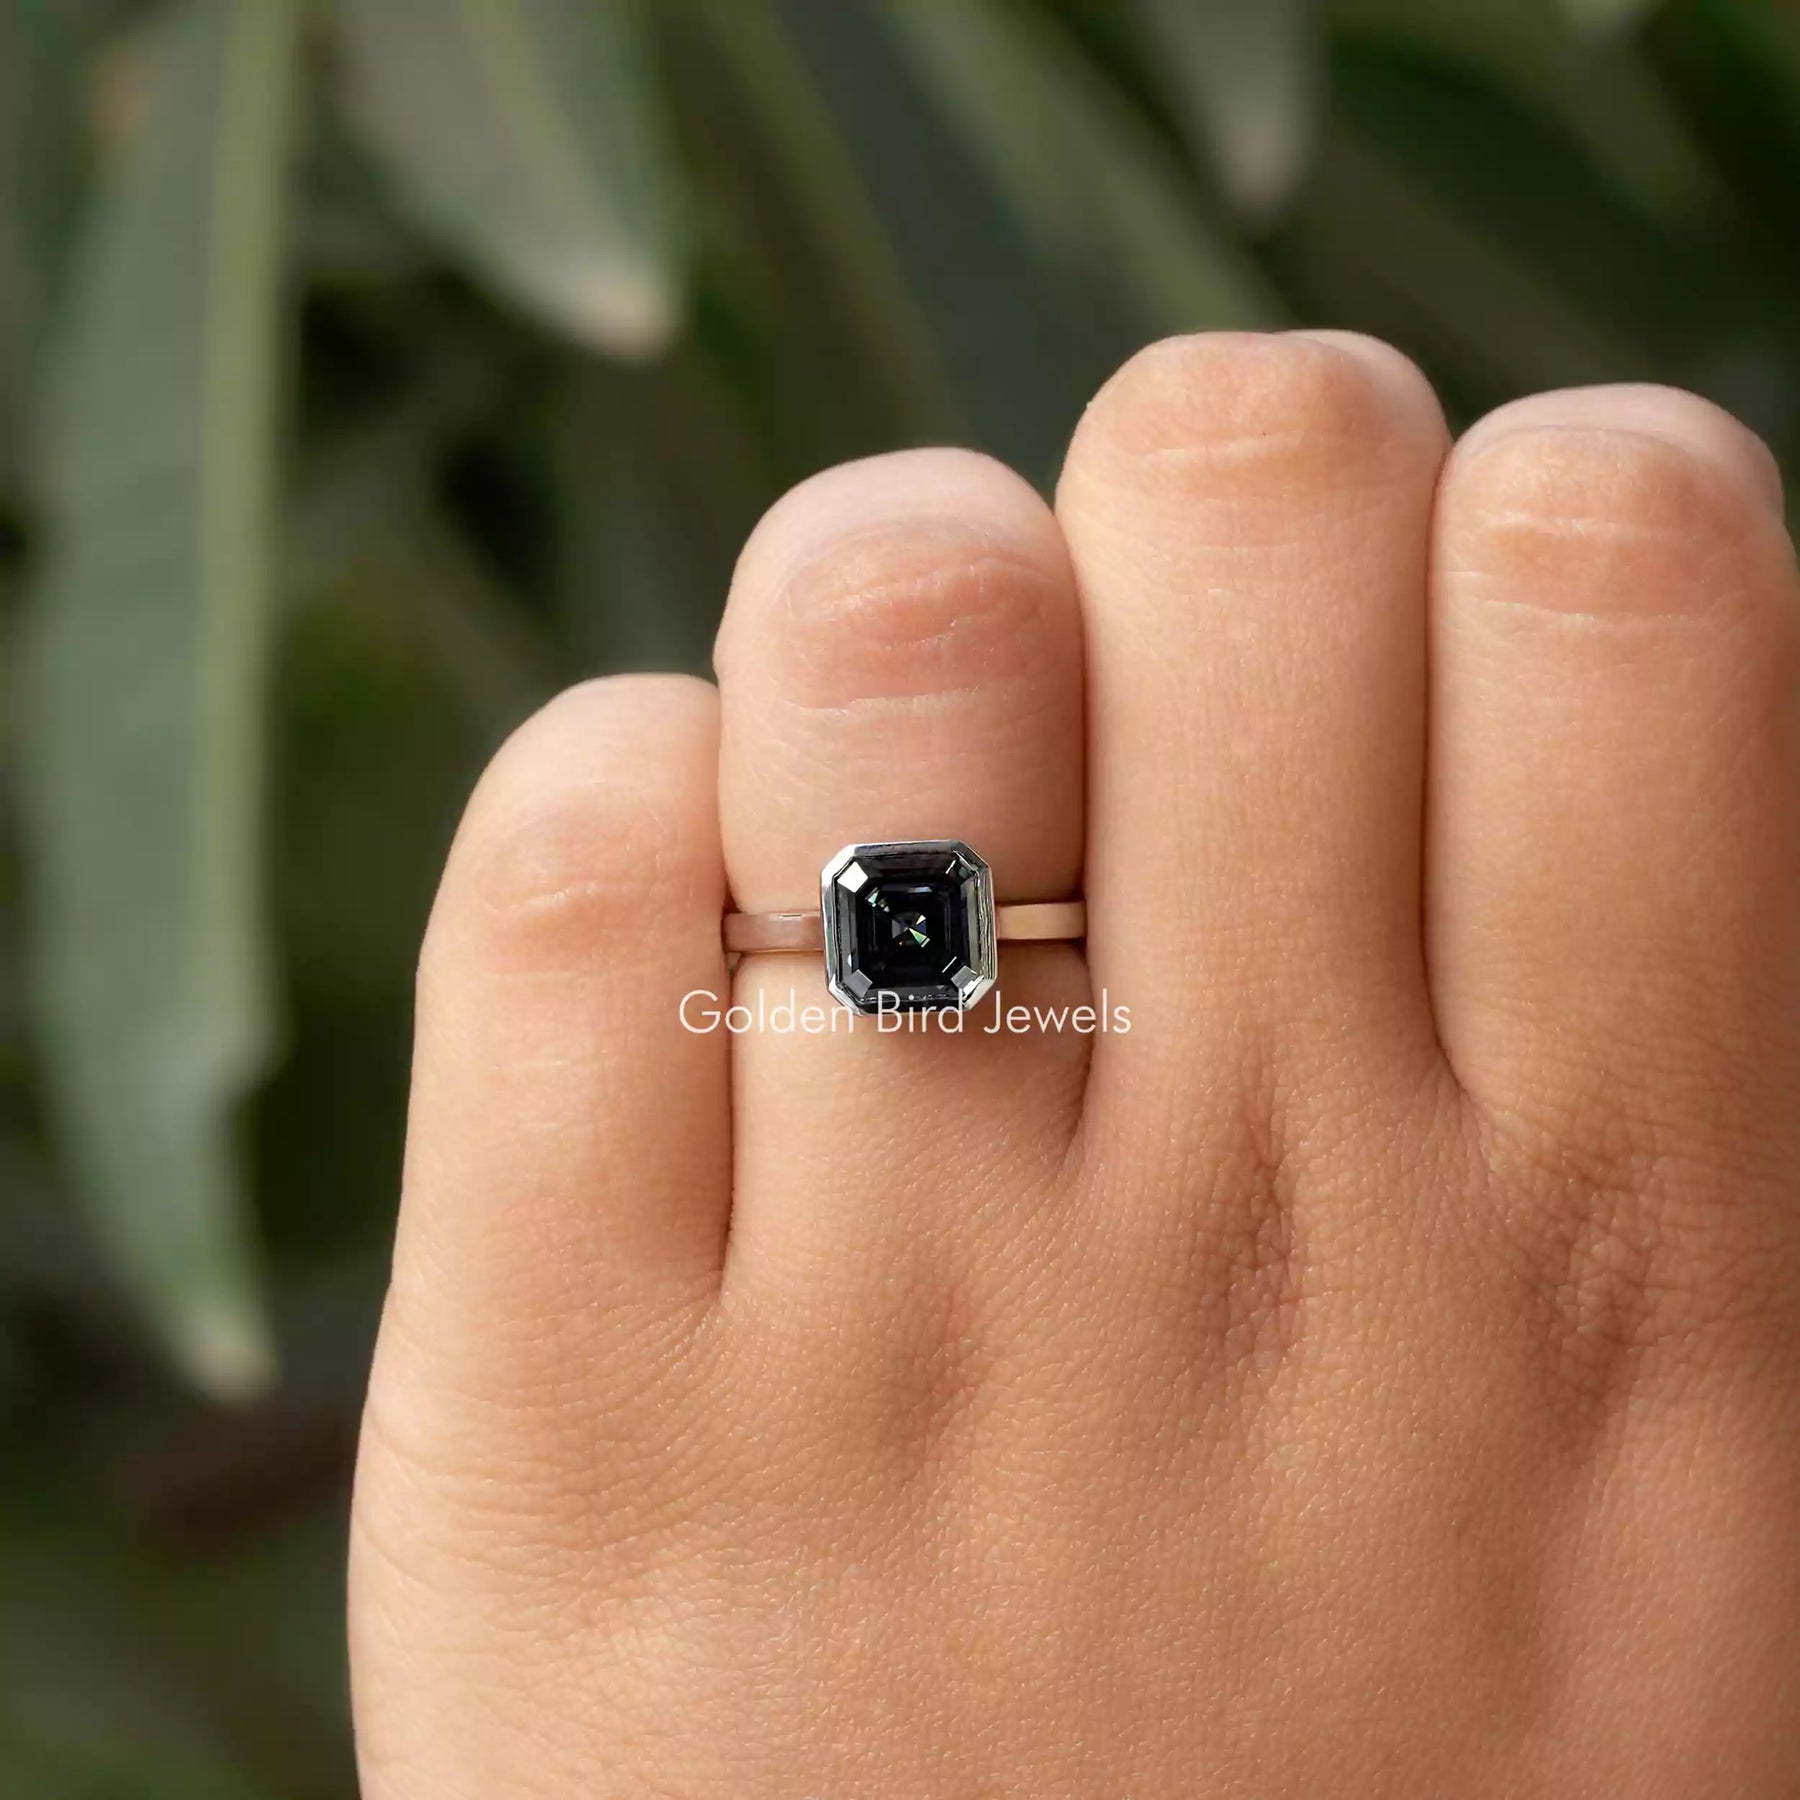 [This asscher cut engagement ring made of dark grey moissanite]-[Golden Bird Jewels]